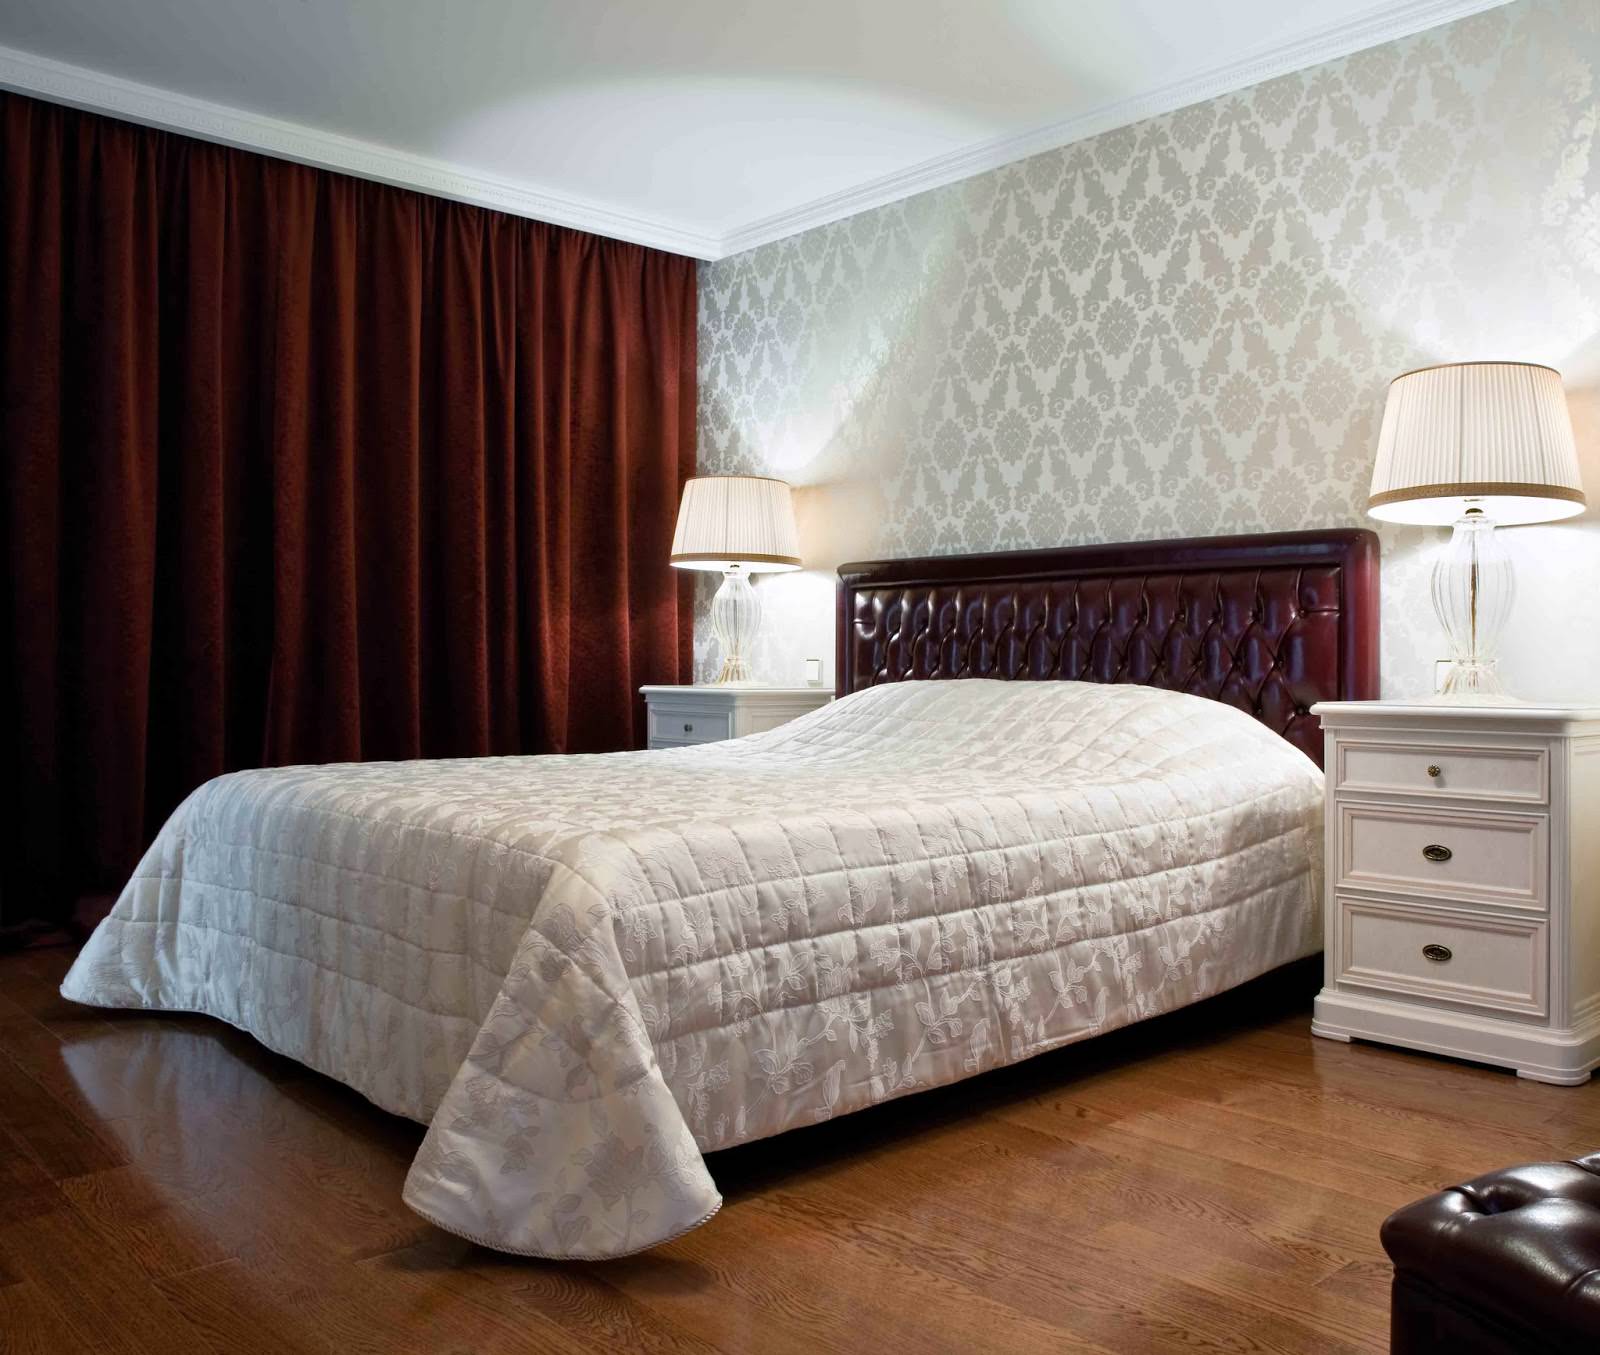 vinröd gardiner i designen av sovrummet med grå tapet